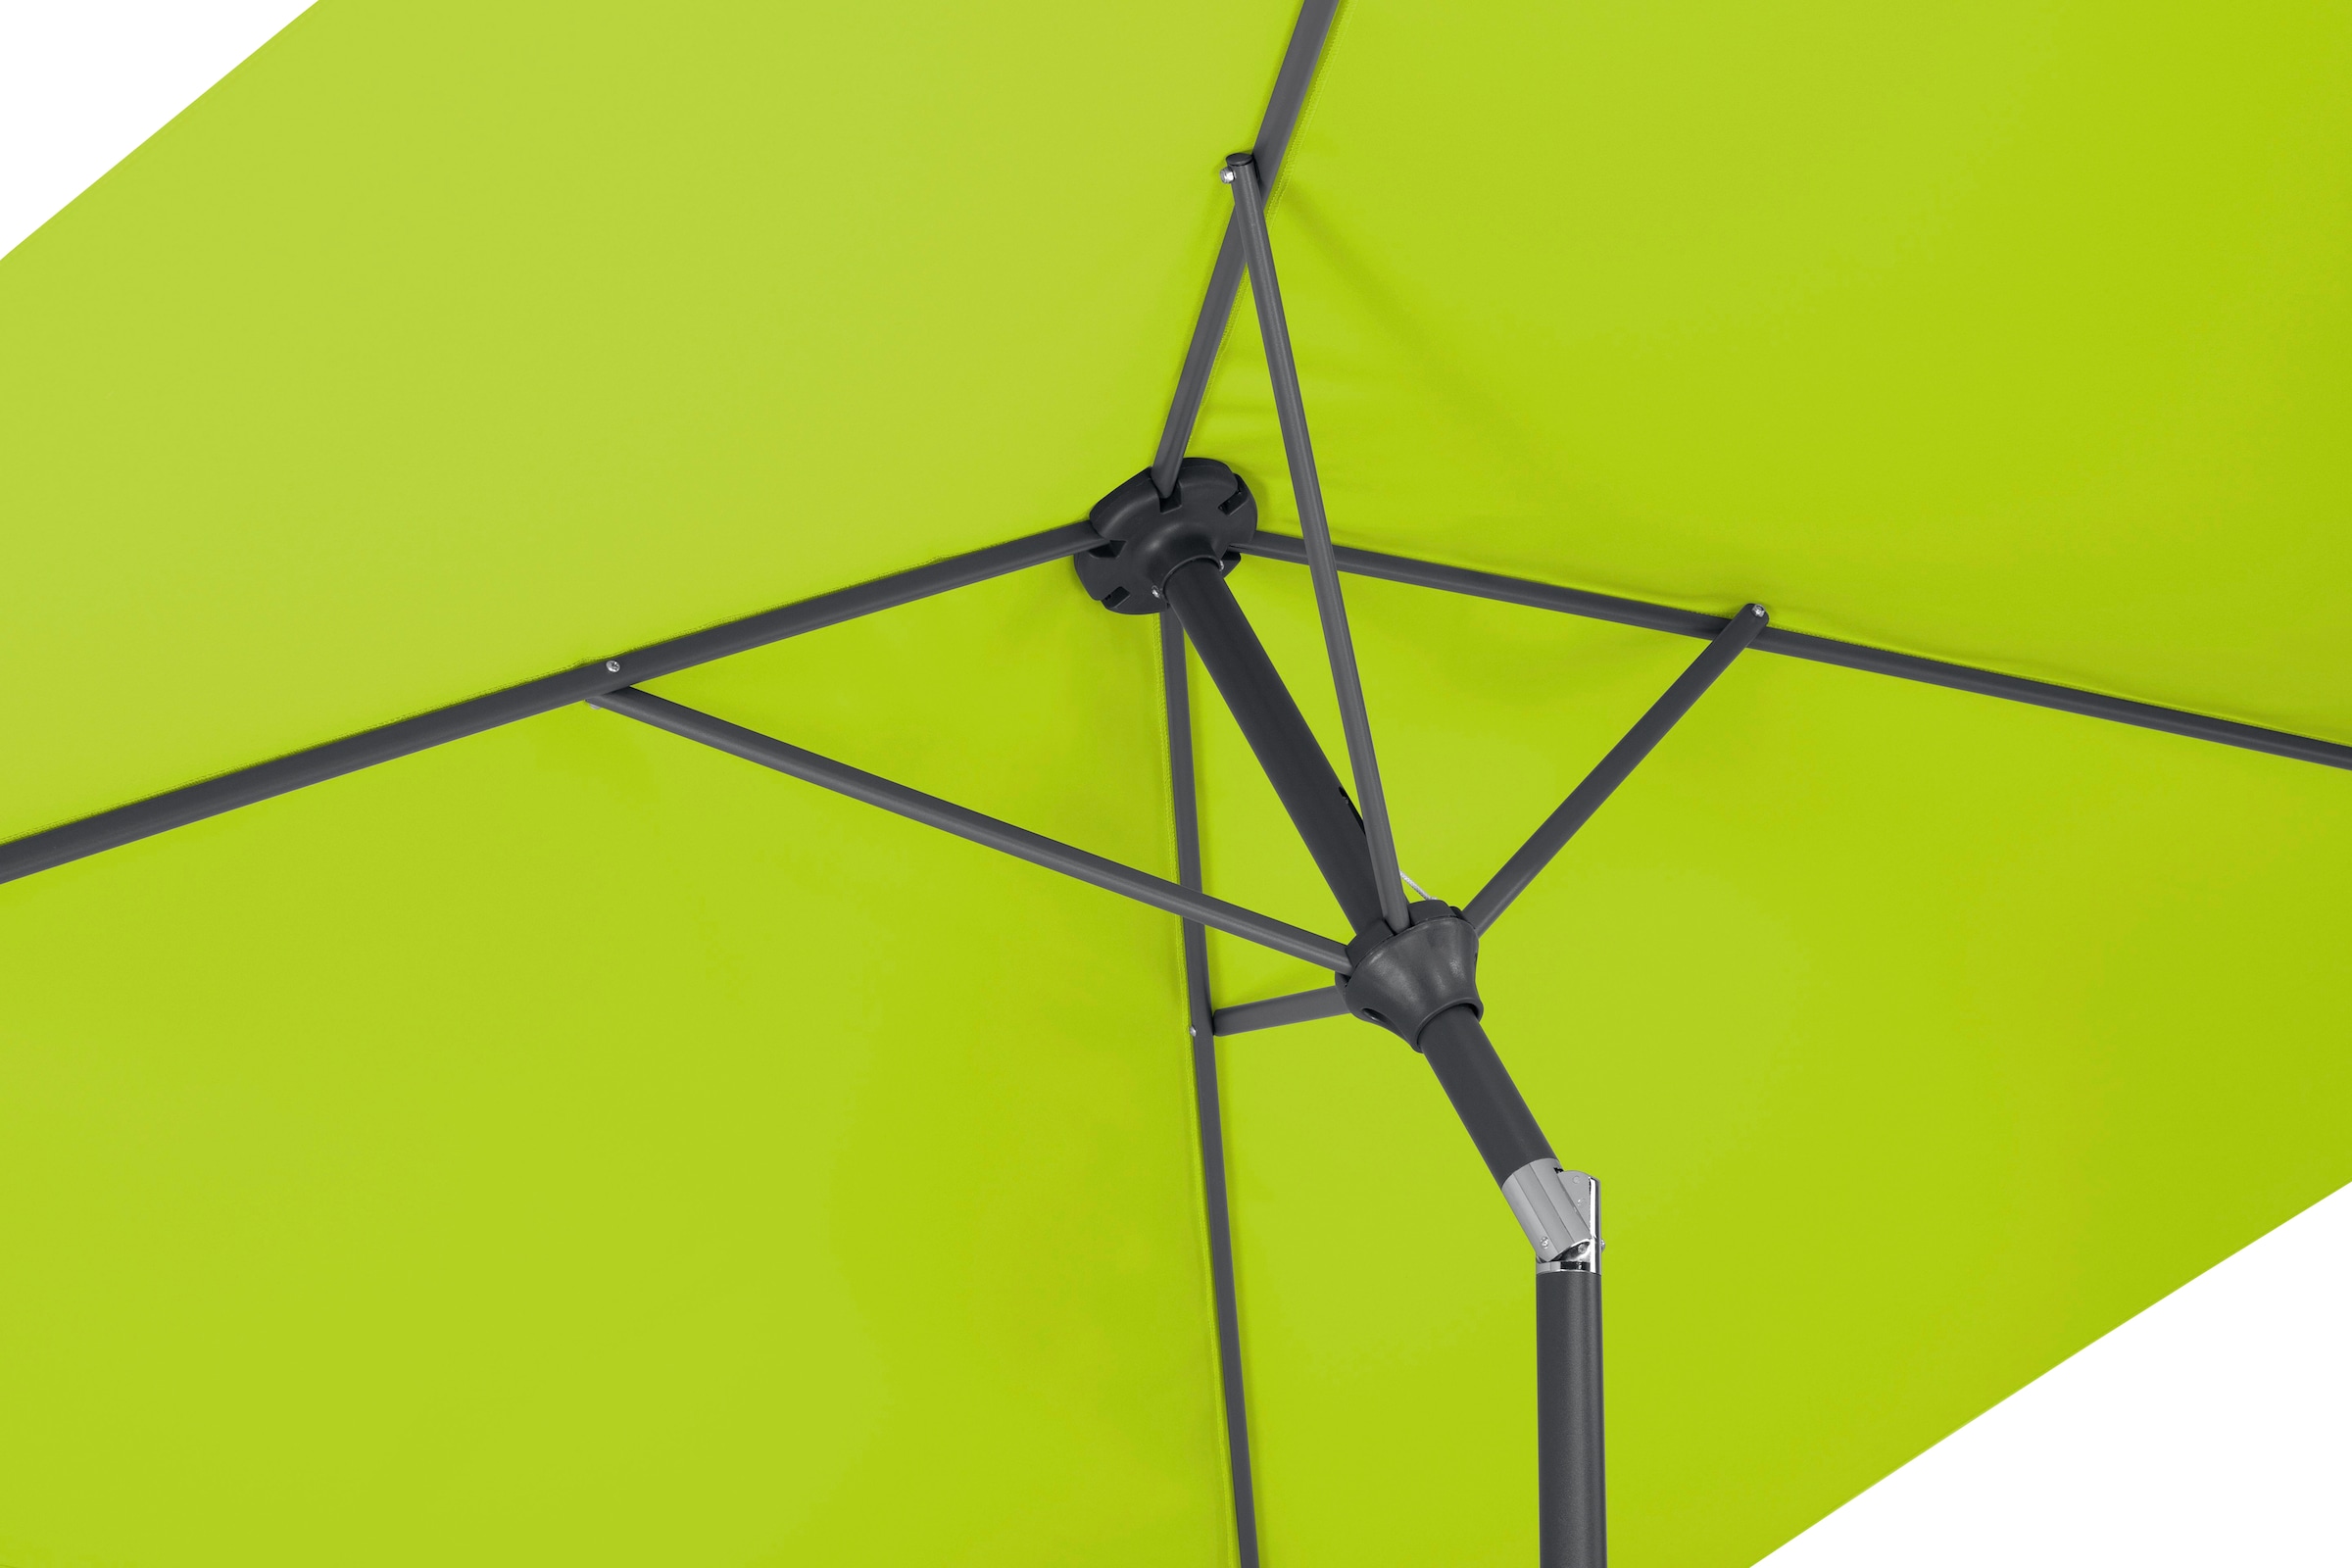 Schneider Schirme Rechteckschirm »Bilbao«, ohne Schirmständer